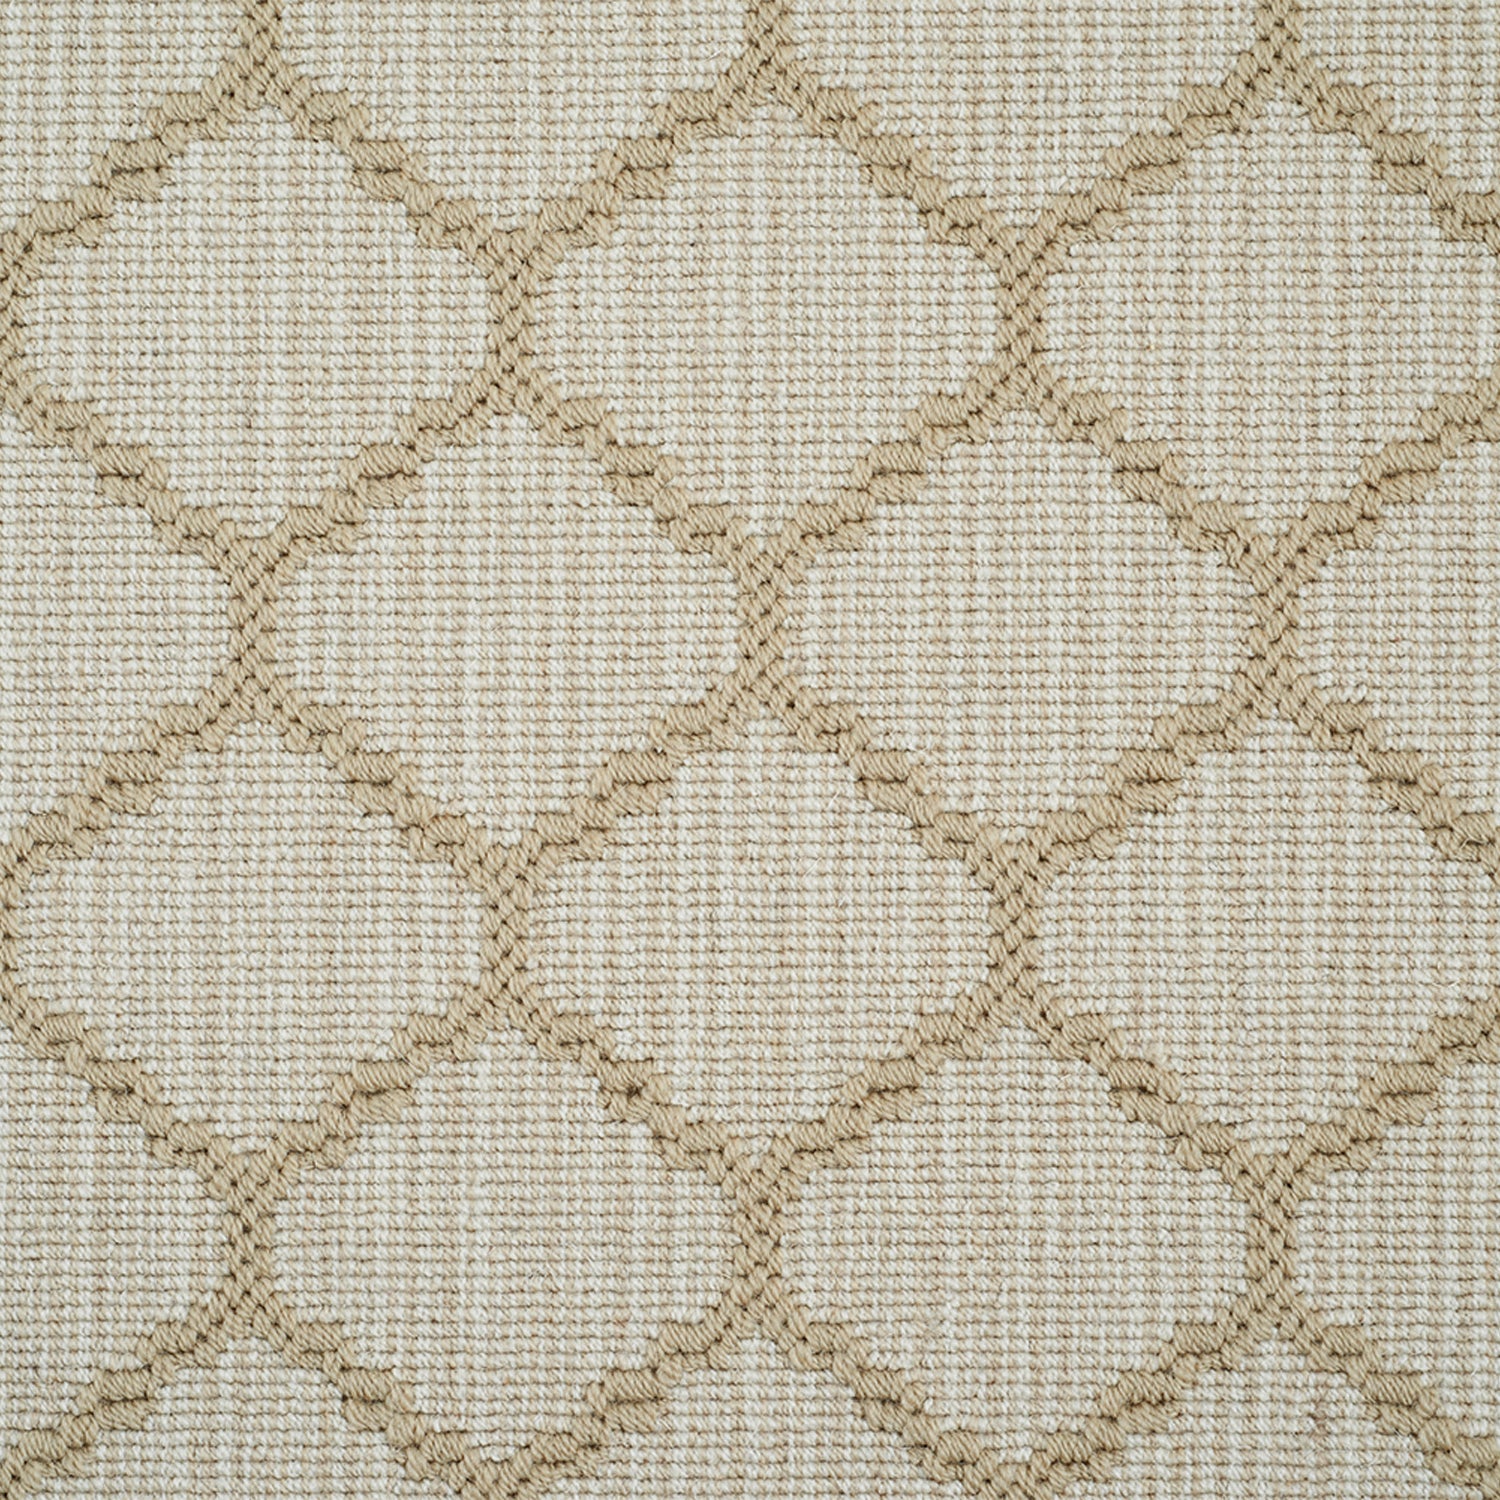 Wool-blend broadloom carpet swatch in a chunky lattice weave in tan on a mottled cream field.